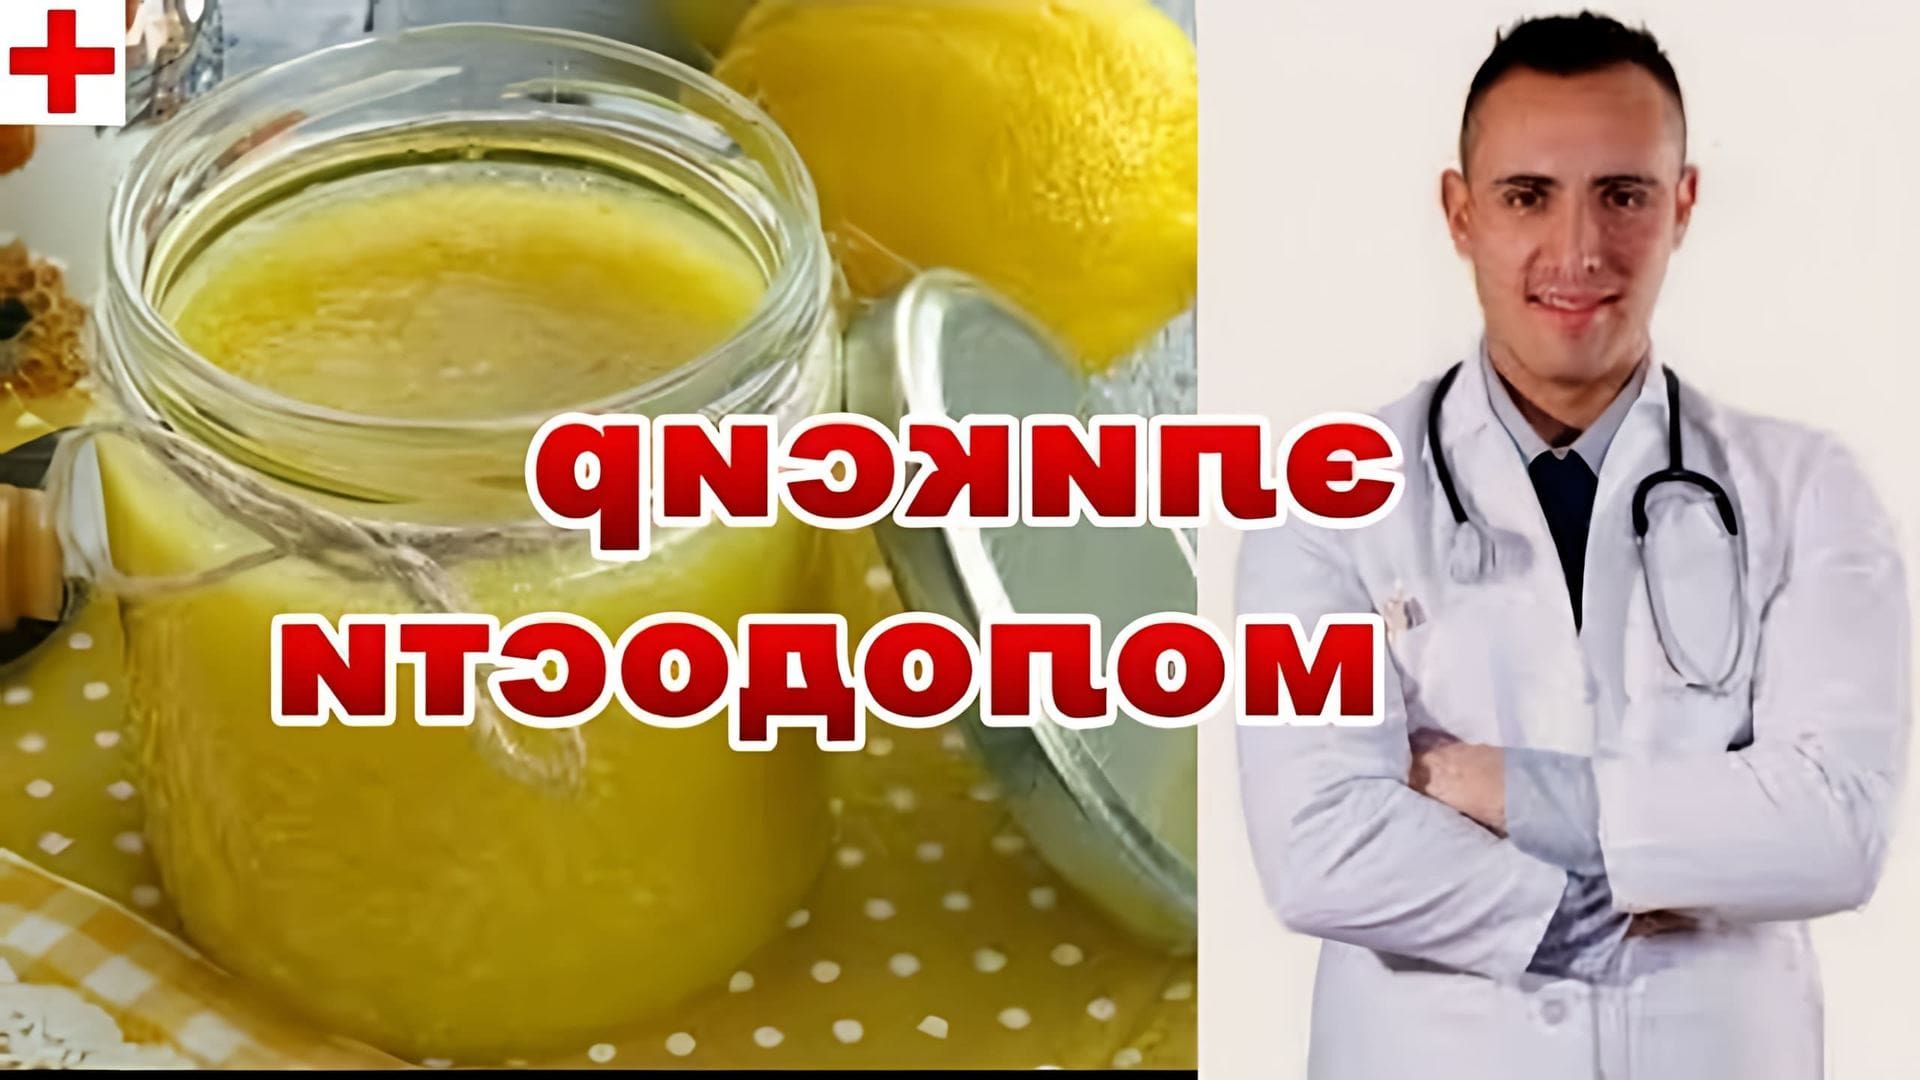 В данном видео рассказывается о том, как очистить сосуды с помощью имбиря, лимона, меда и чеснока